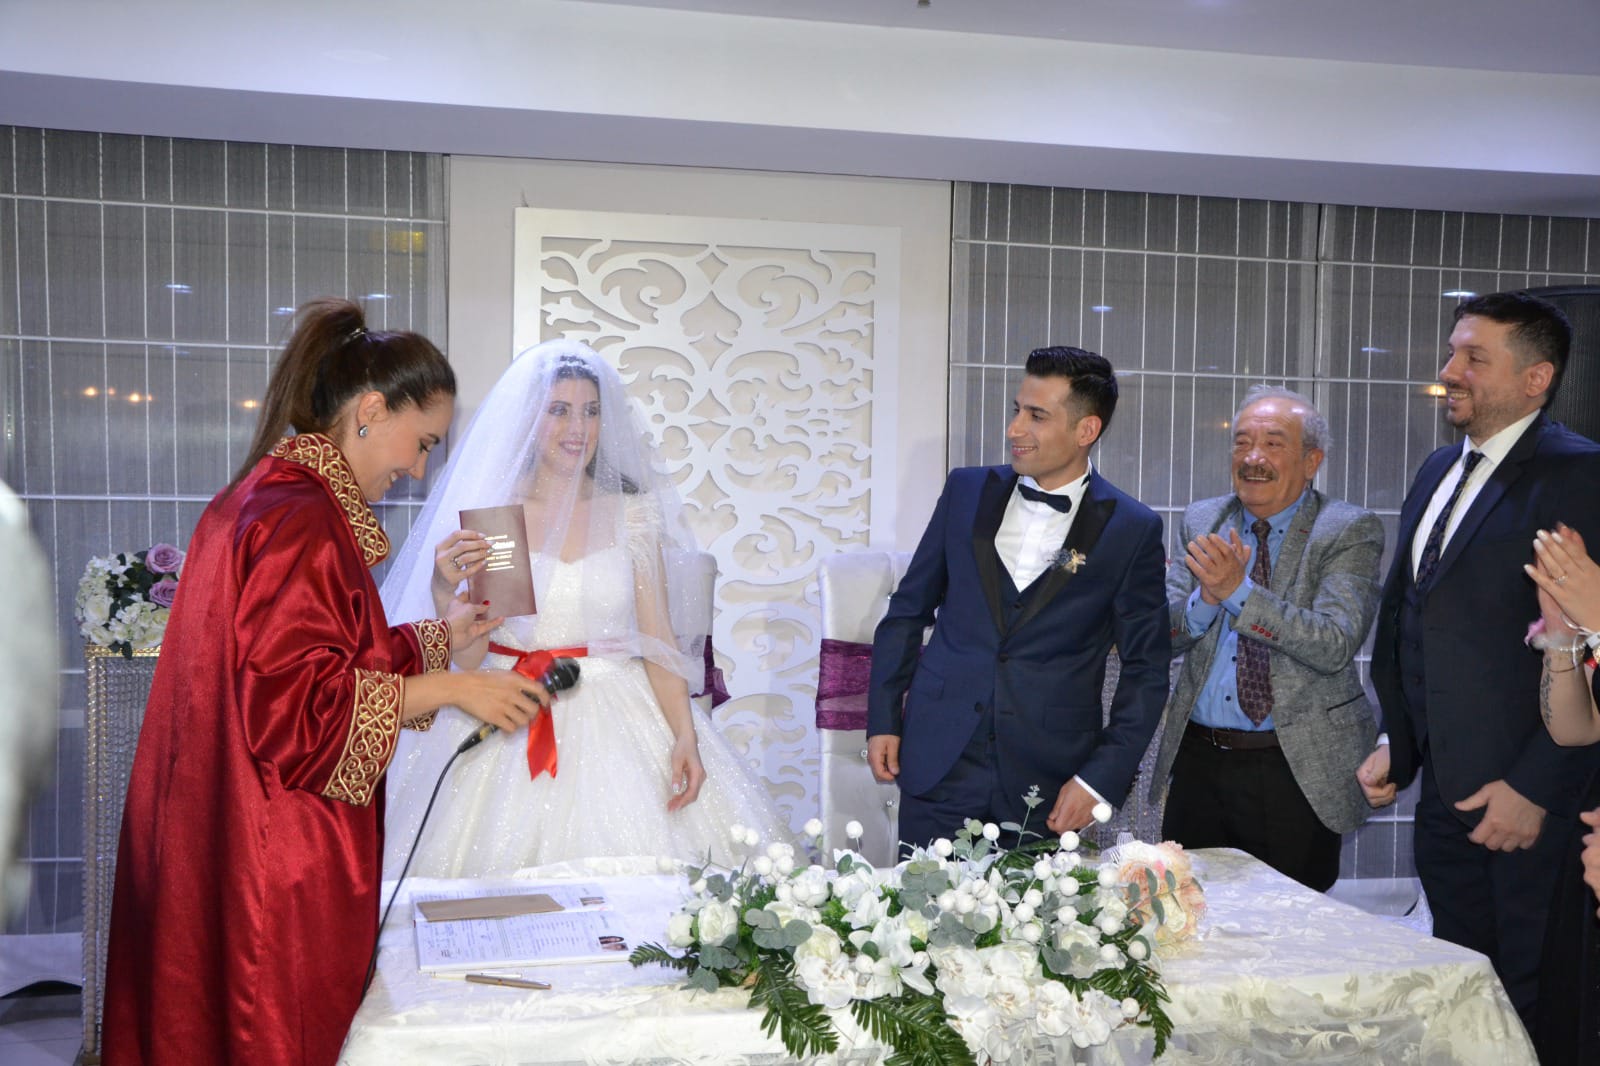 Emektar gazeteci Şenol Karaduman oğlunu evlendirdi